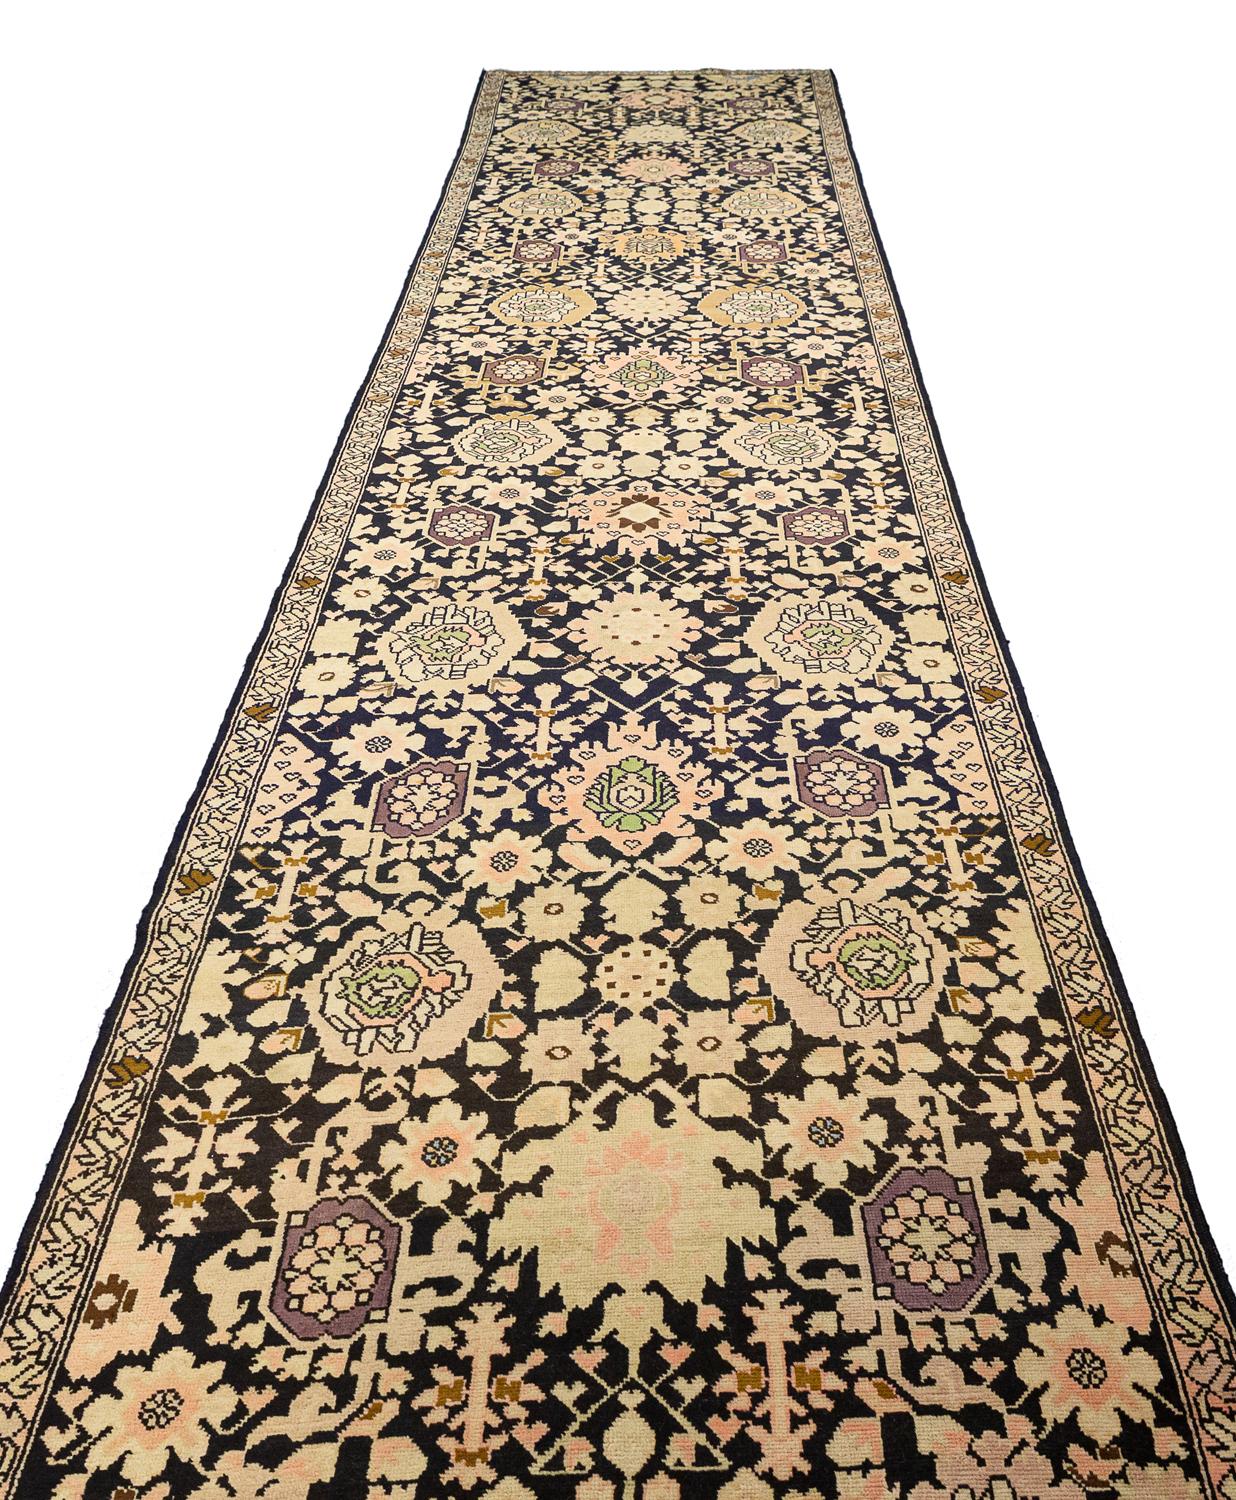 Cet ancien tapis Karabakh Runner de taille Corridor tissé vers 1900 est un must pour ceux qui apprécient la beauté et l'histoire des tapis. Les motifs complexes et les couleurs sont étonnants, et la qualité du tissage est excellente. Cette pièce